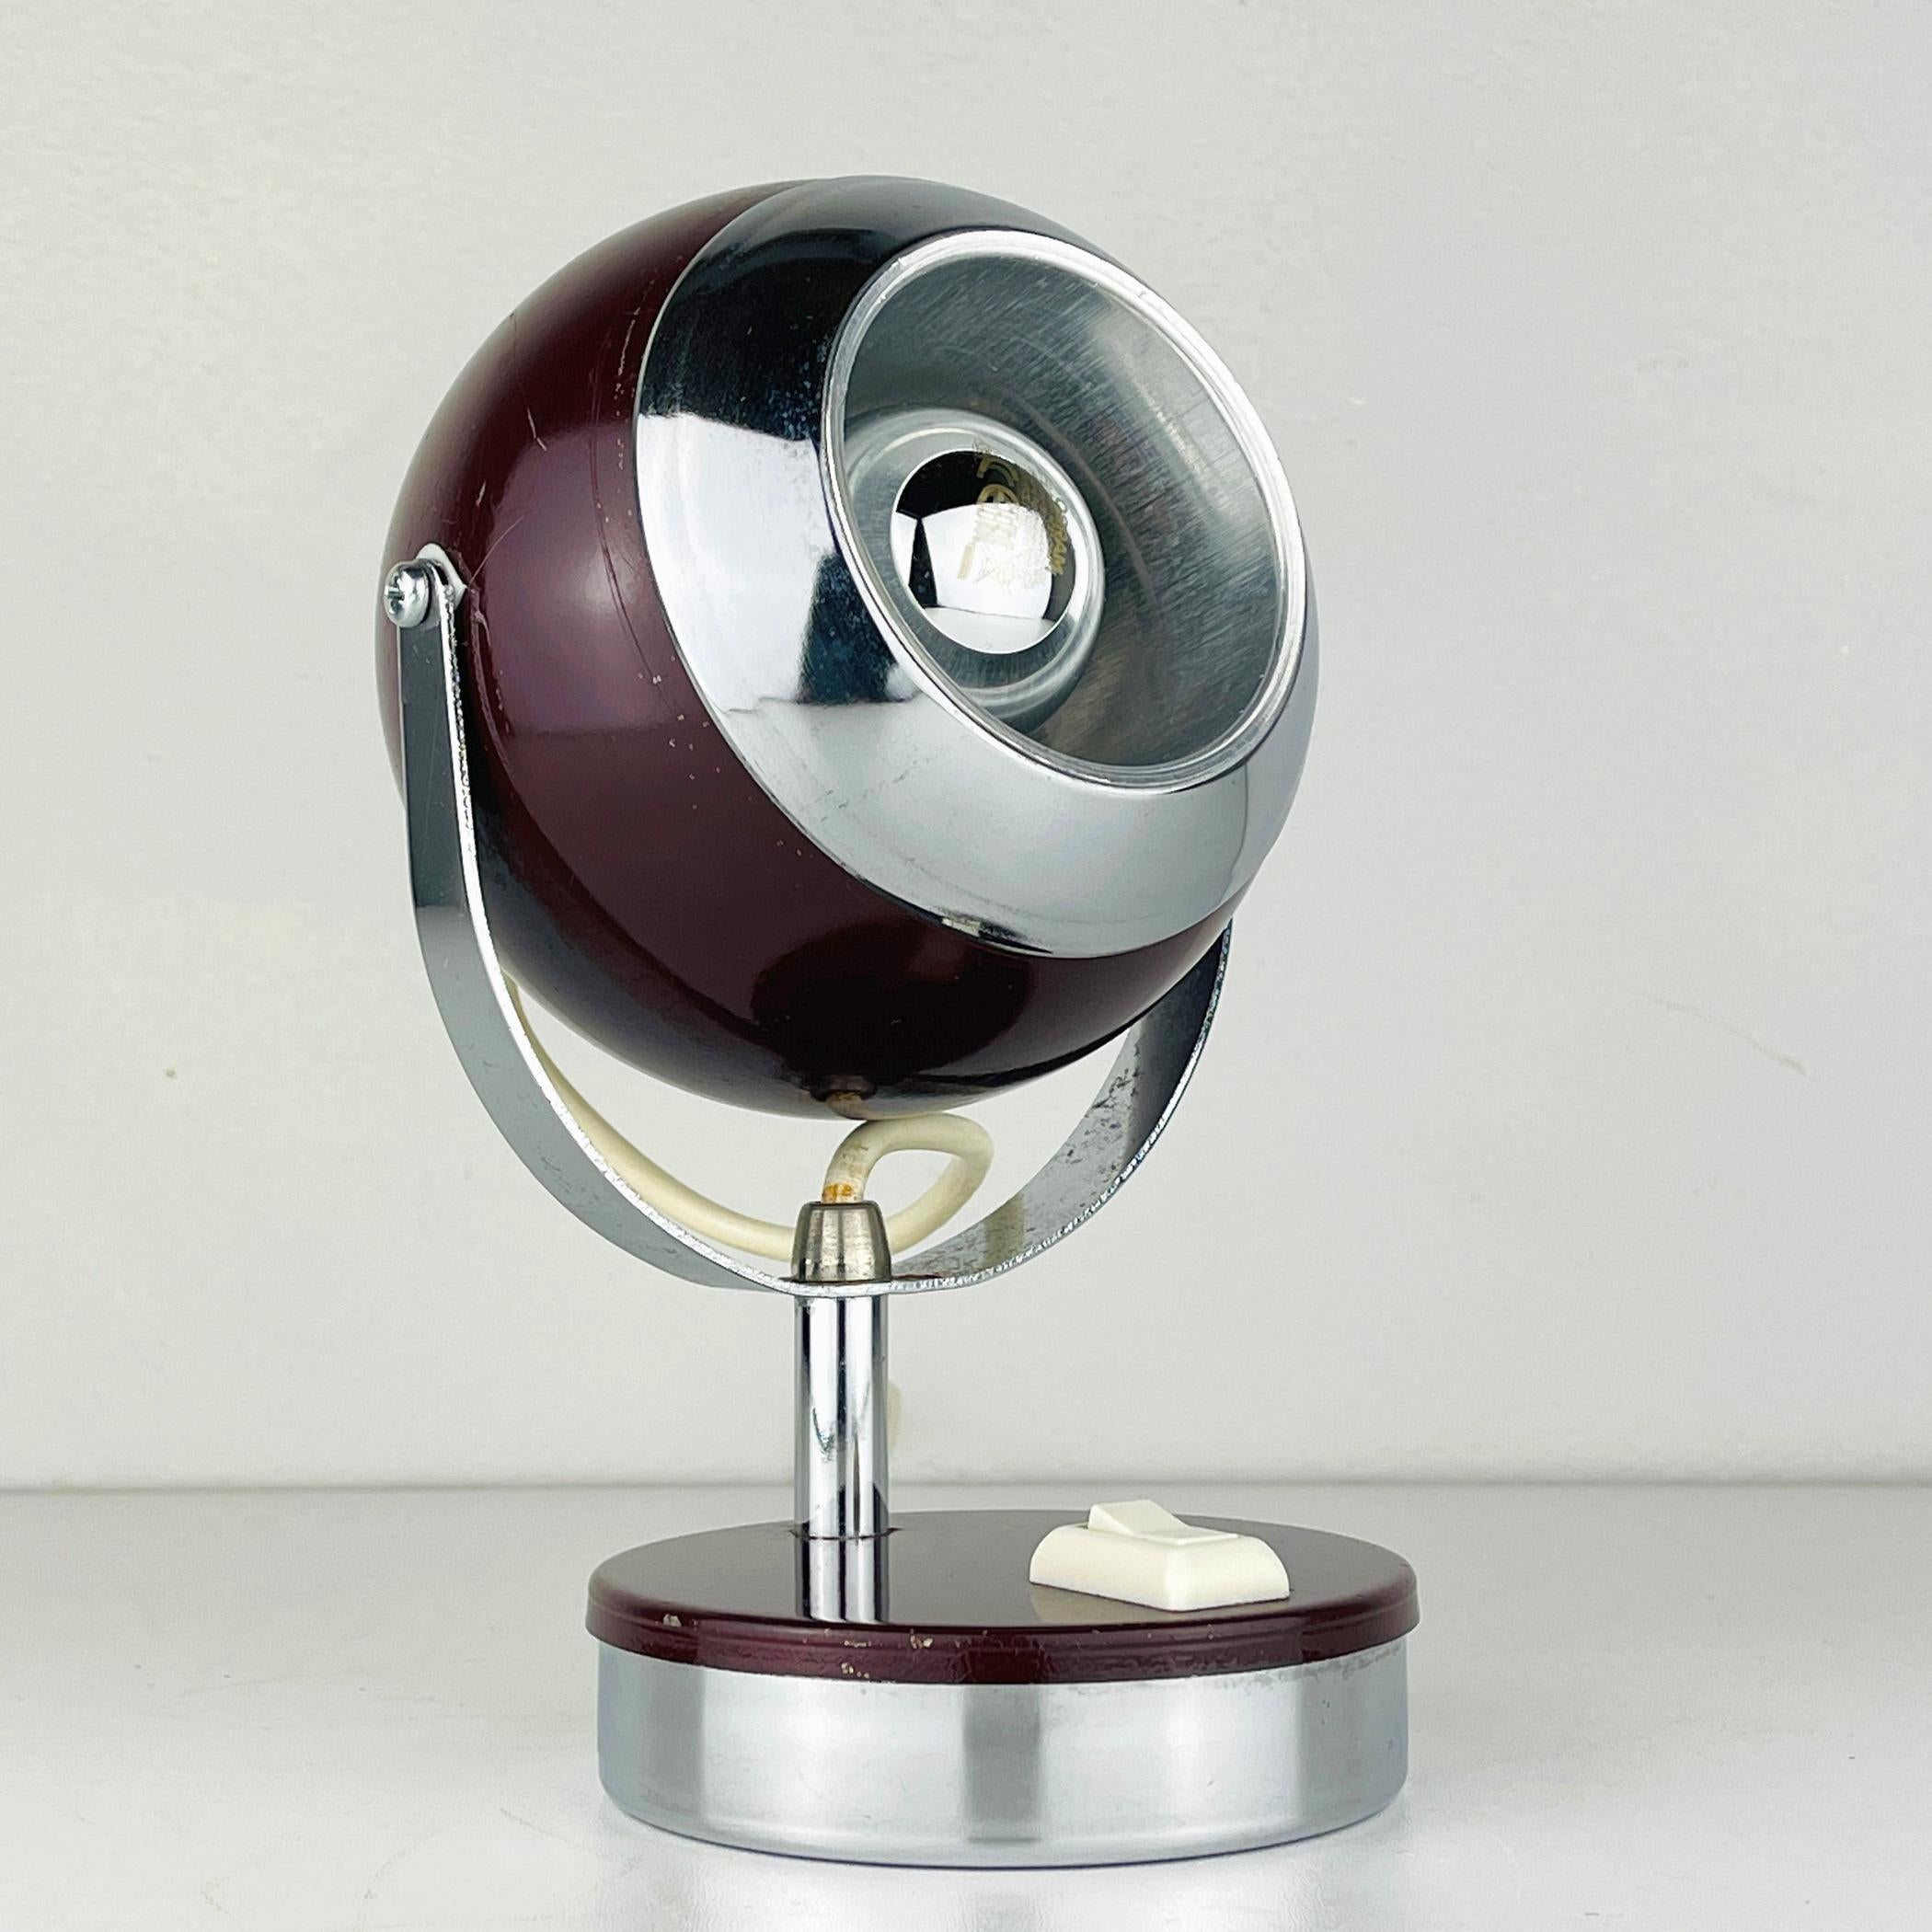 La lampe de bureau vintage Eyeball fabriquée en Italie dans les années 60. Cette lampe de table est entièrement en métal. L'abat-jour tourne dans tous les sens.
Nécessite une lampe standard Edison E27 à vis. Prise européenne, longueur du câble 180